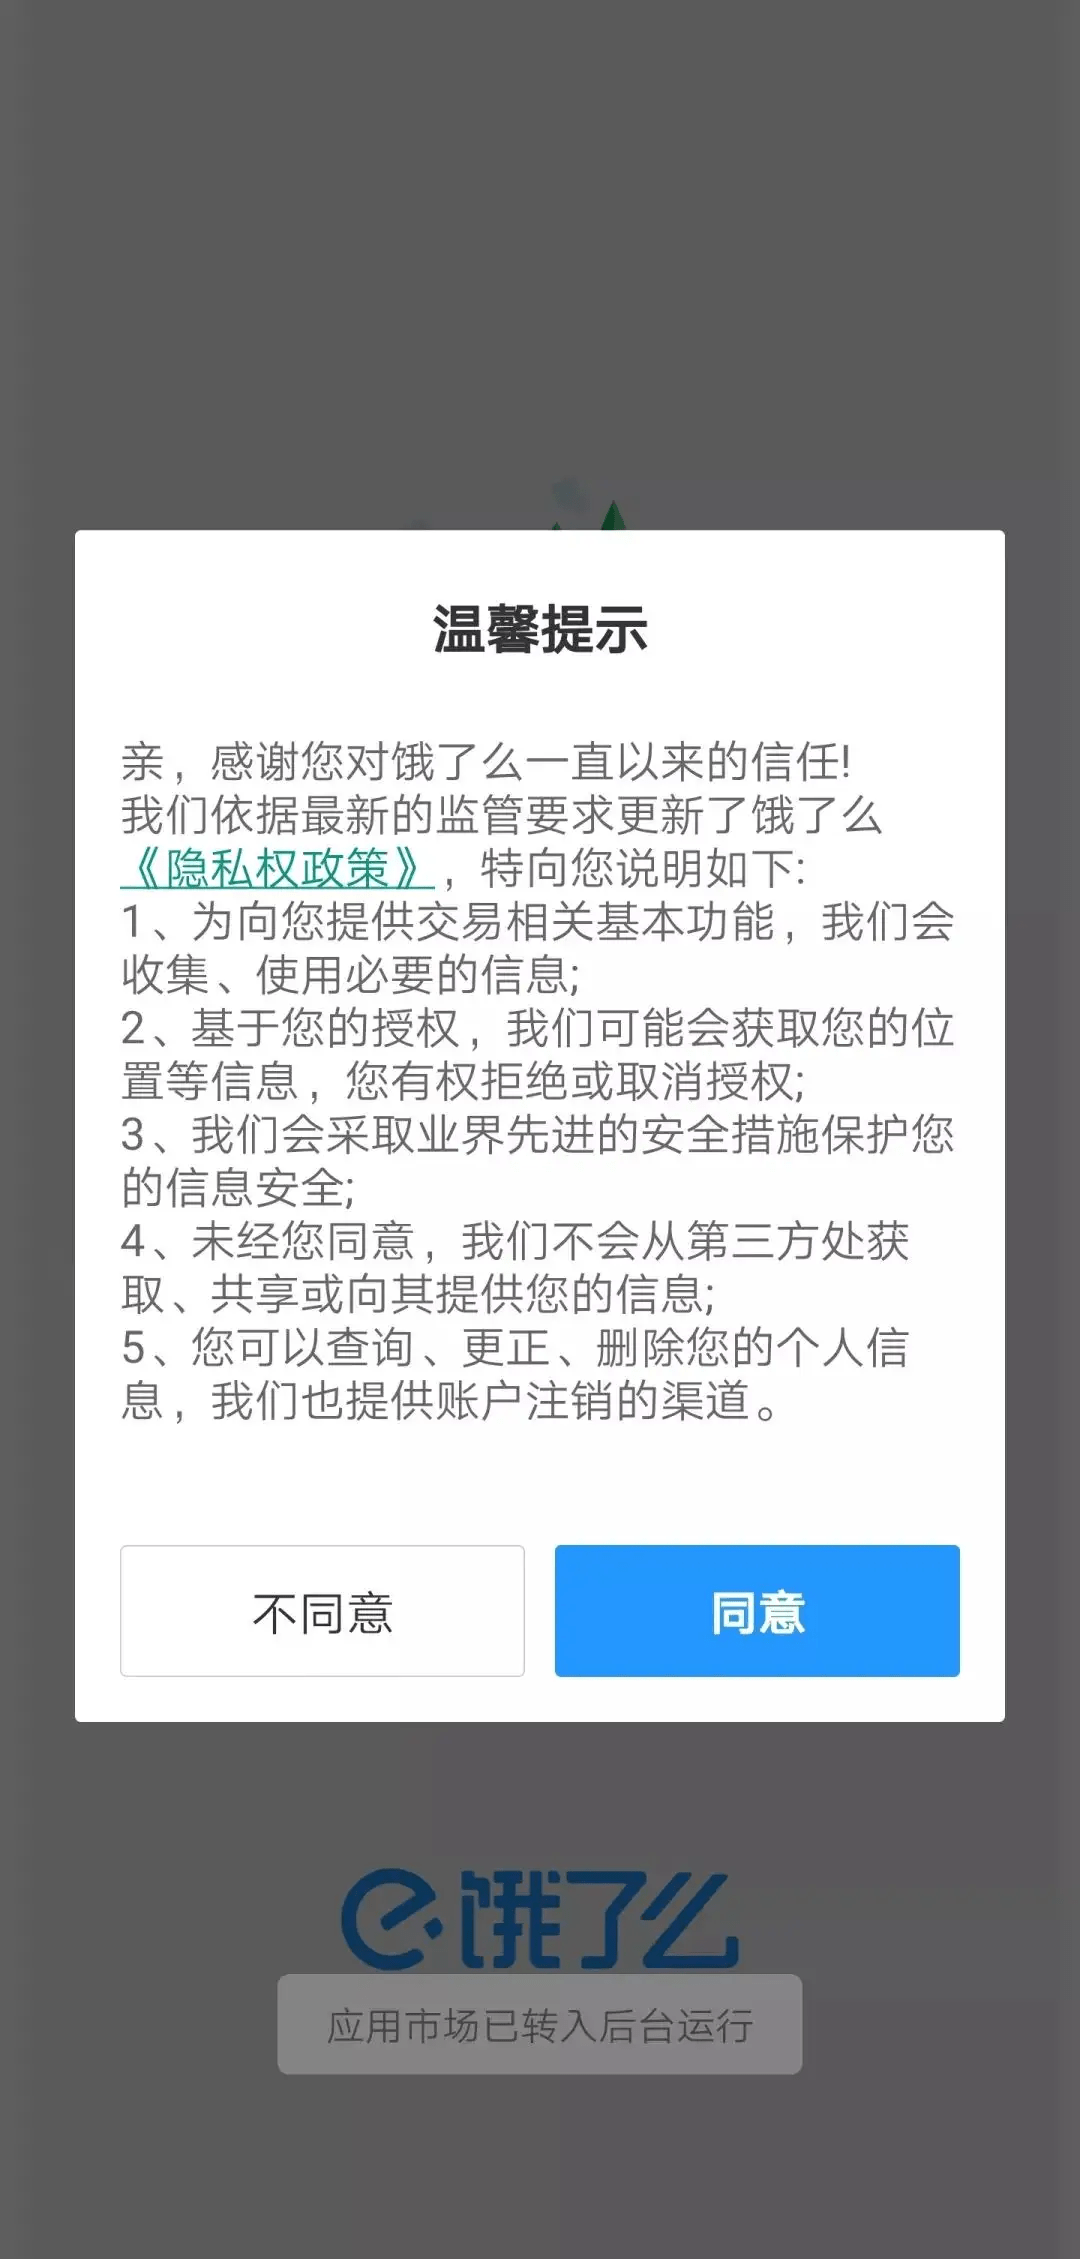 30款App违规收集个人信息被通报！中国银行手机银行在列-大河新闻